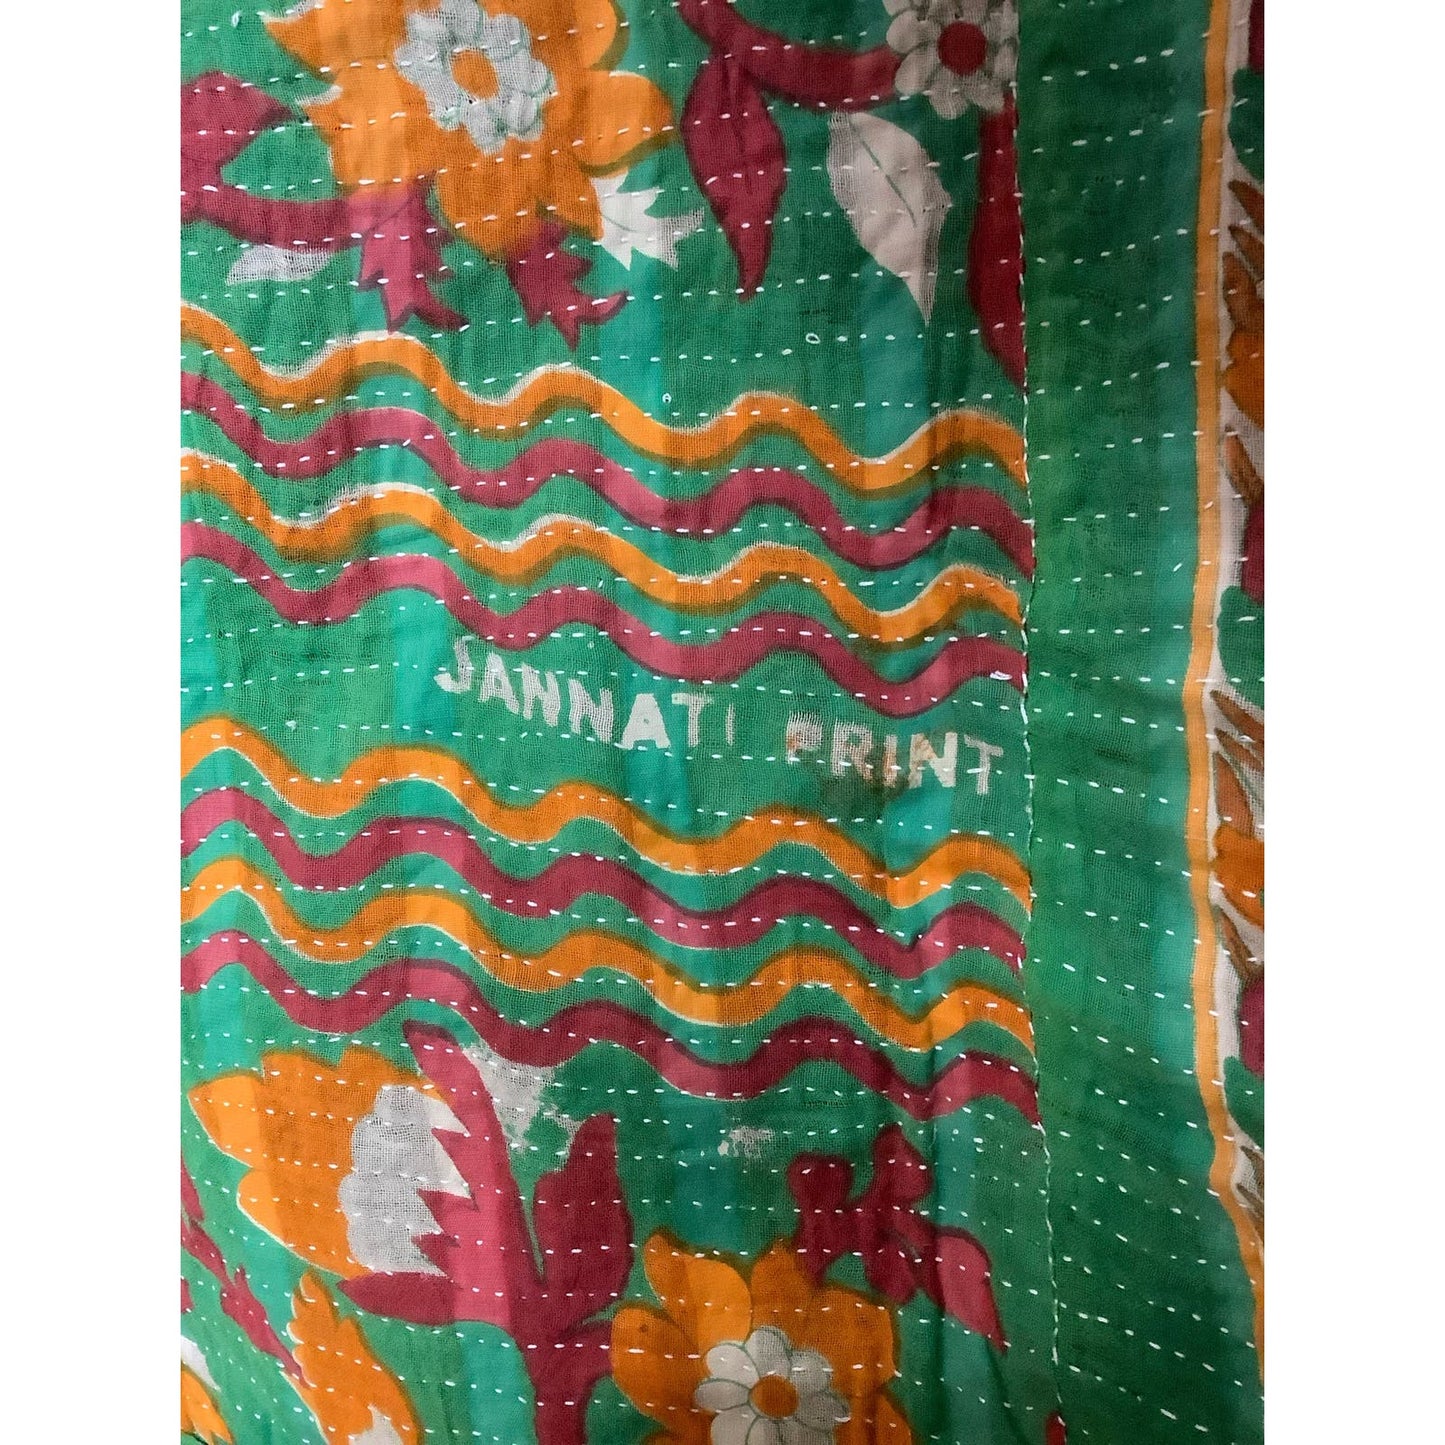 Vintage Kantha Quilt Floral Vibrant Colors 54” x 80”